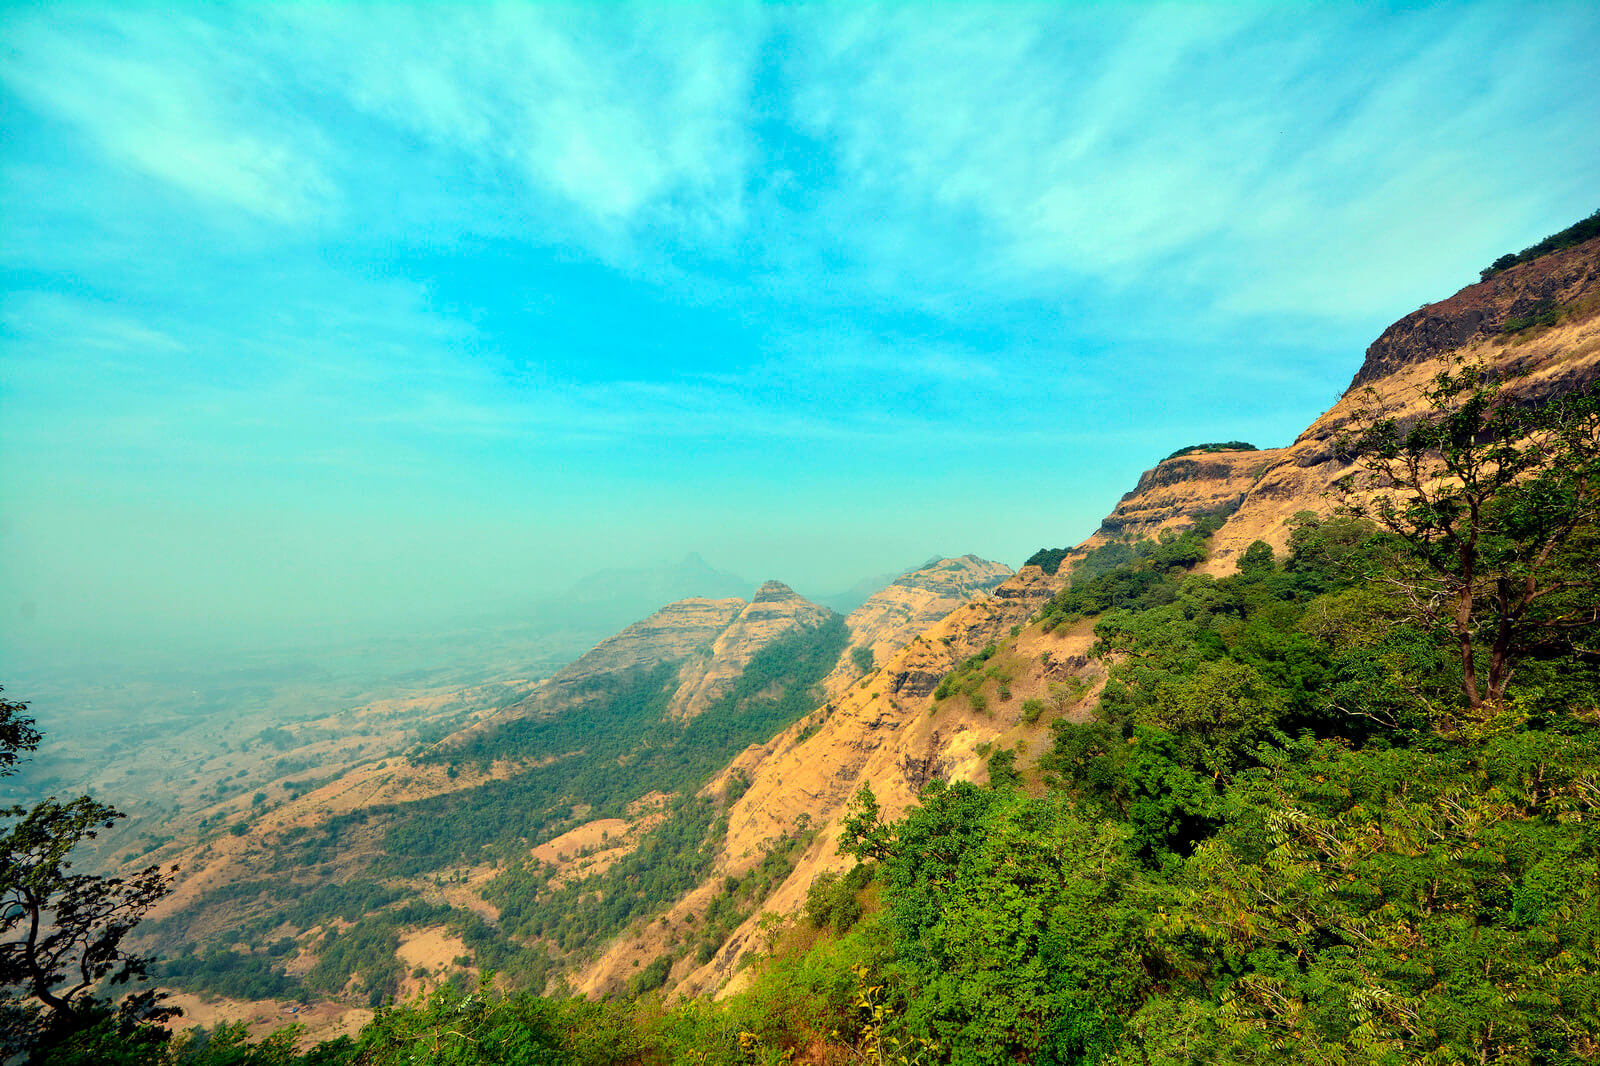 Sahyadri Mountain Range